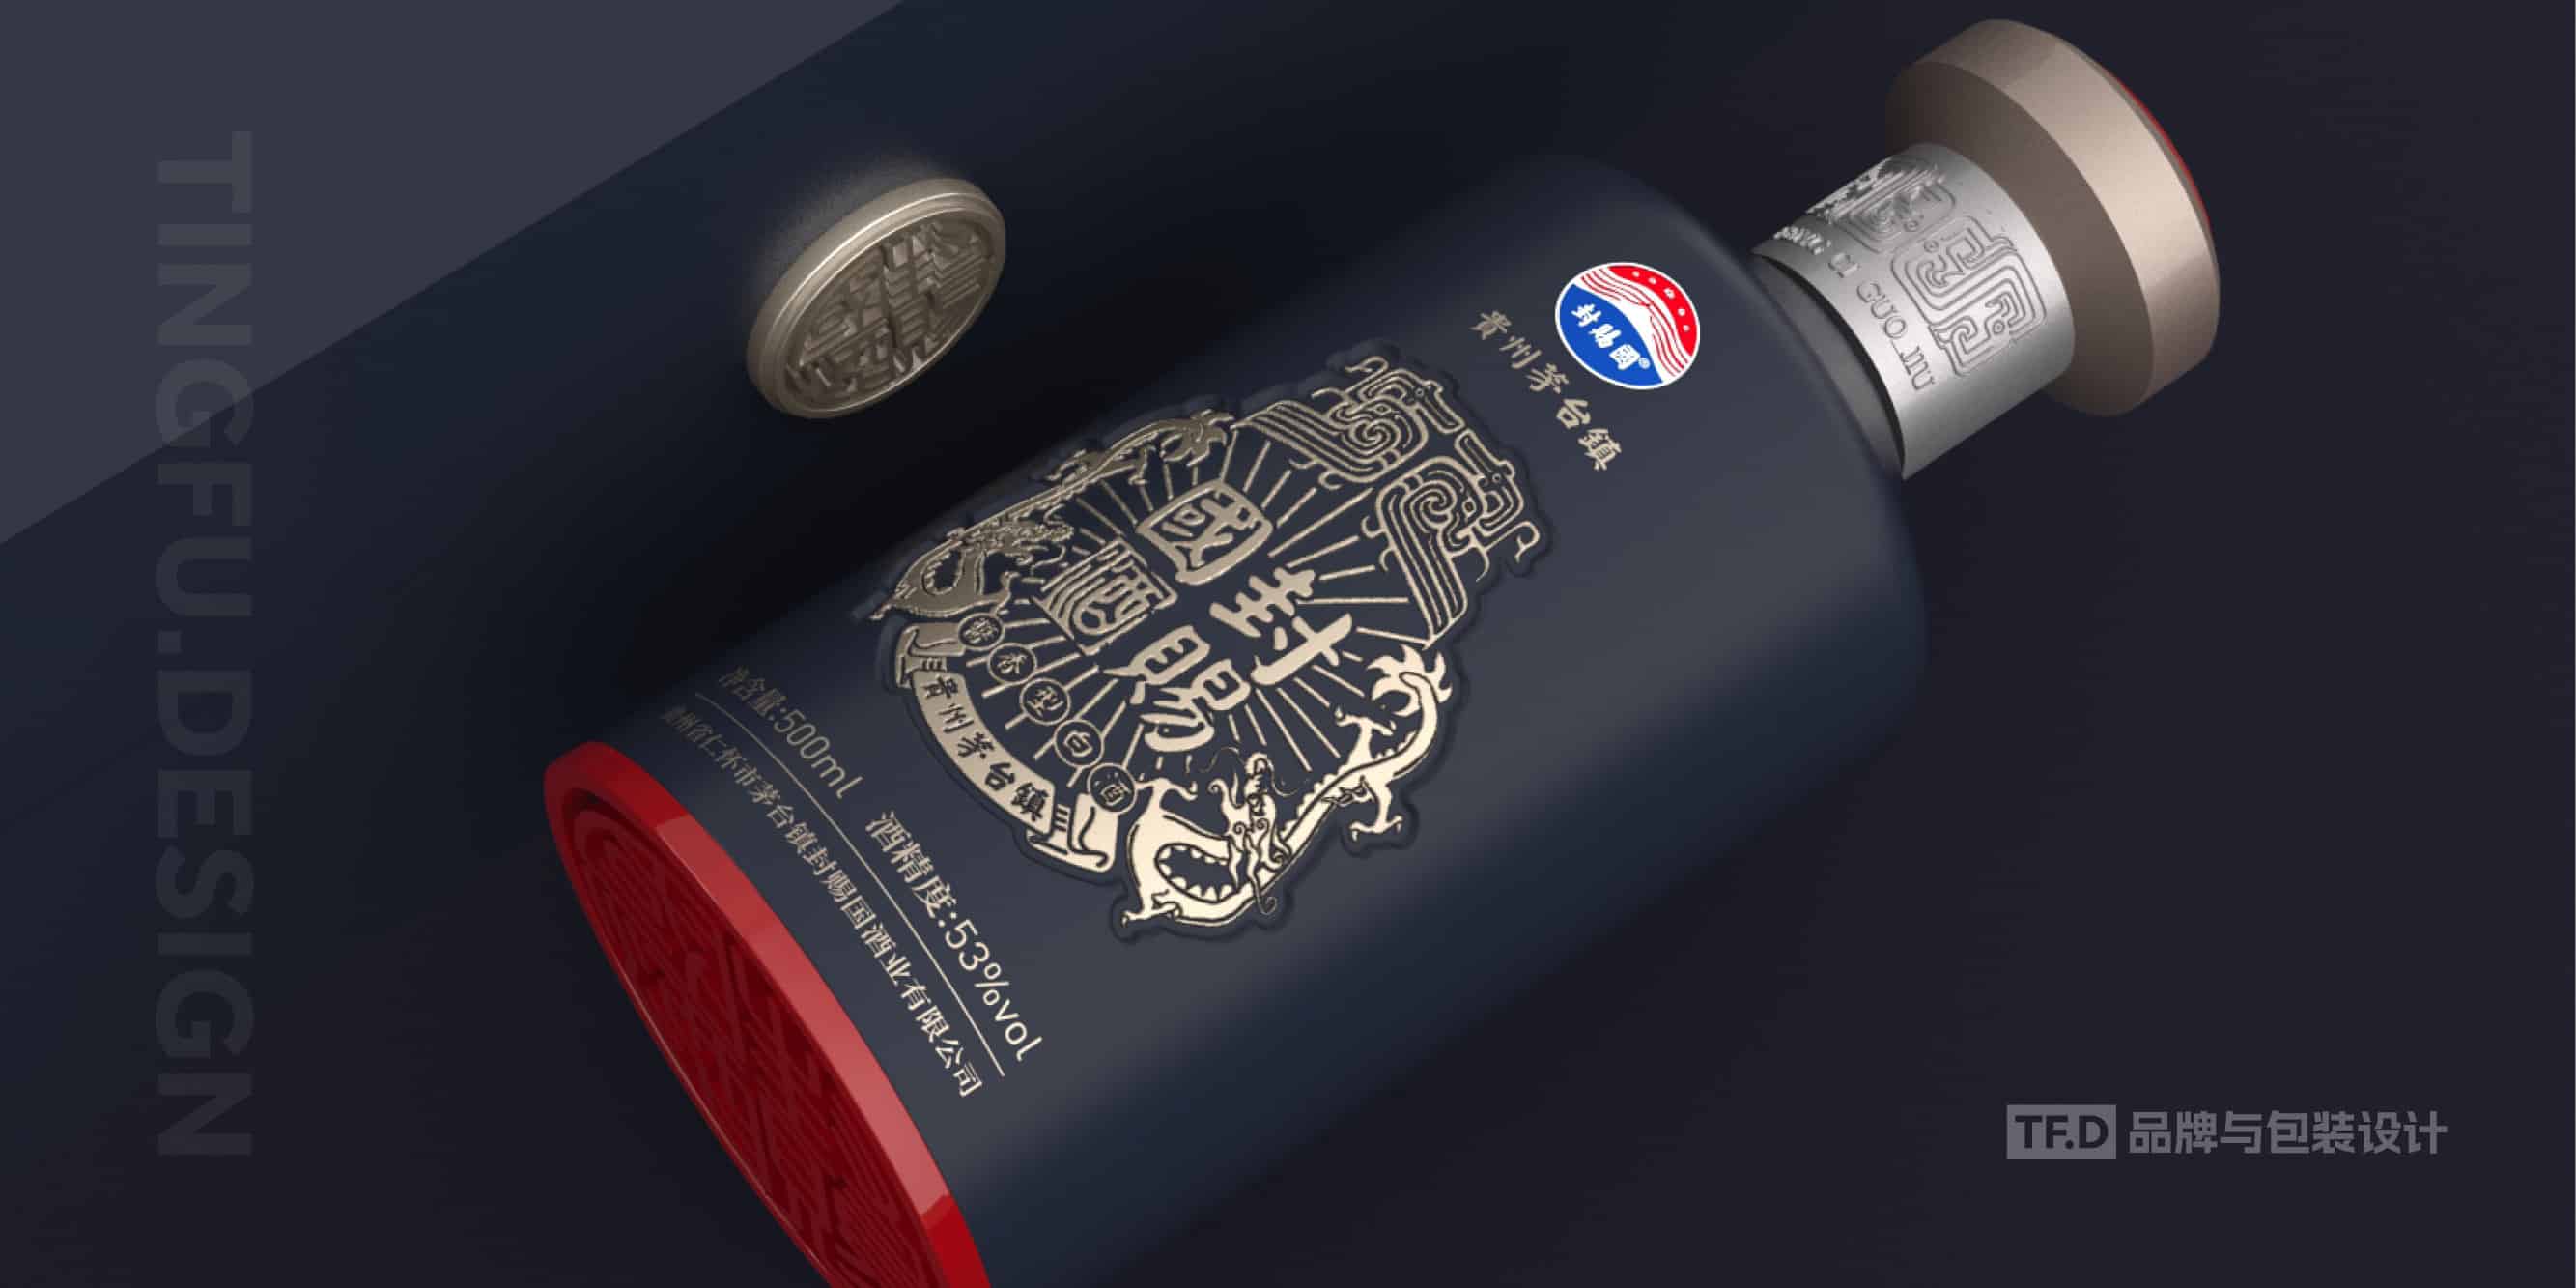 TFD品牌与包装设计-部分酒包装设计案例19-tuya.jpg